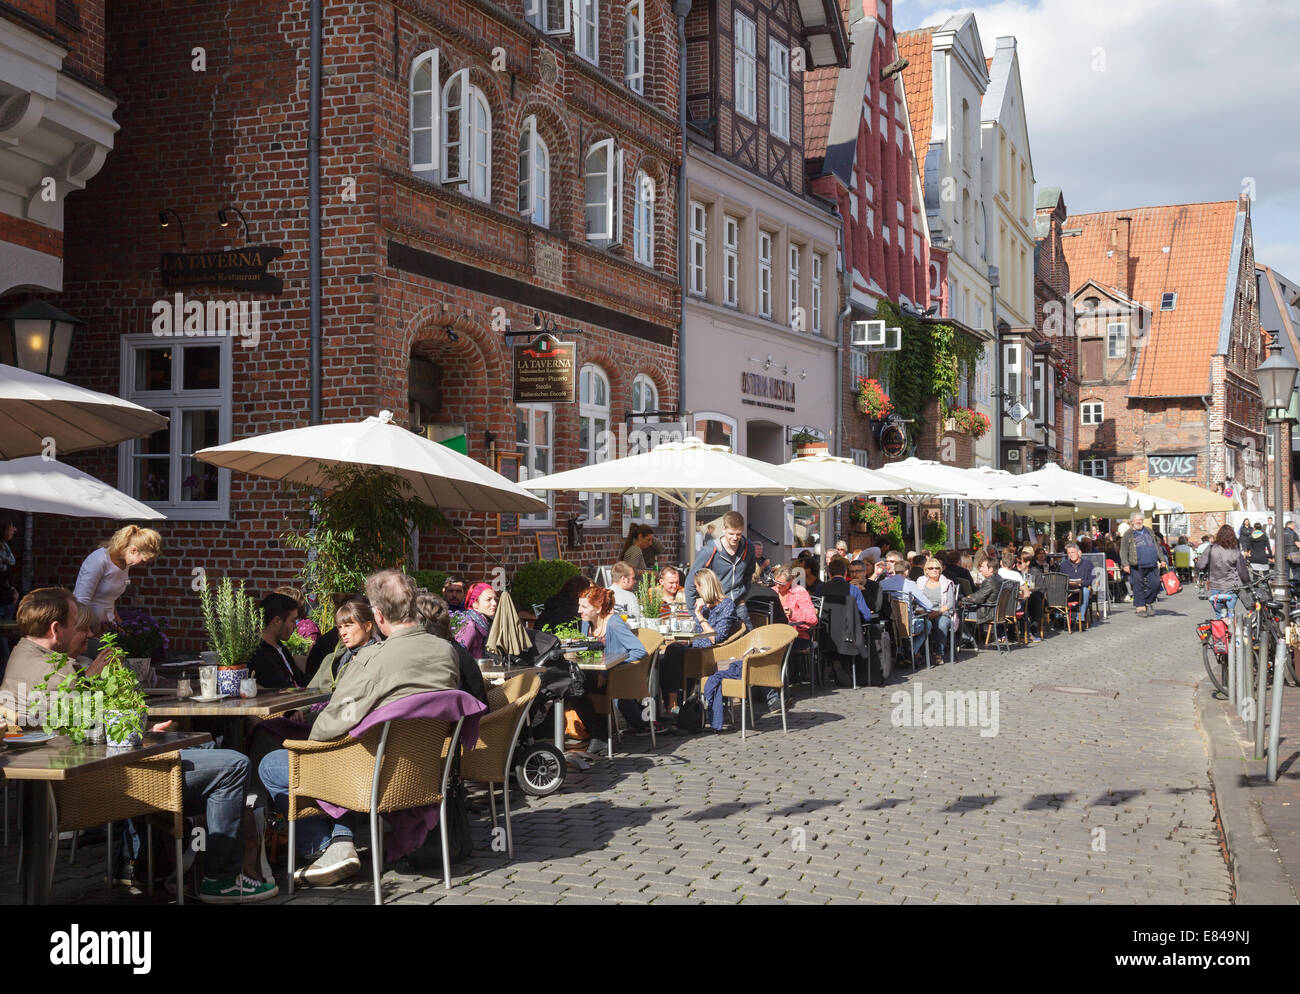 Suis Stintmarkt avec des gens assis à l'extérieur des restaurants, Lunebourg, Basse-Saxe, Allemagne Banque D'Images